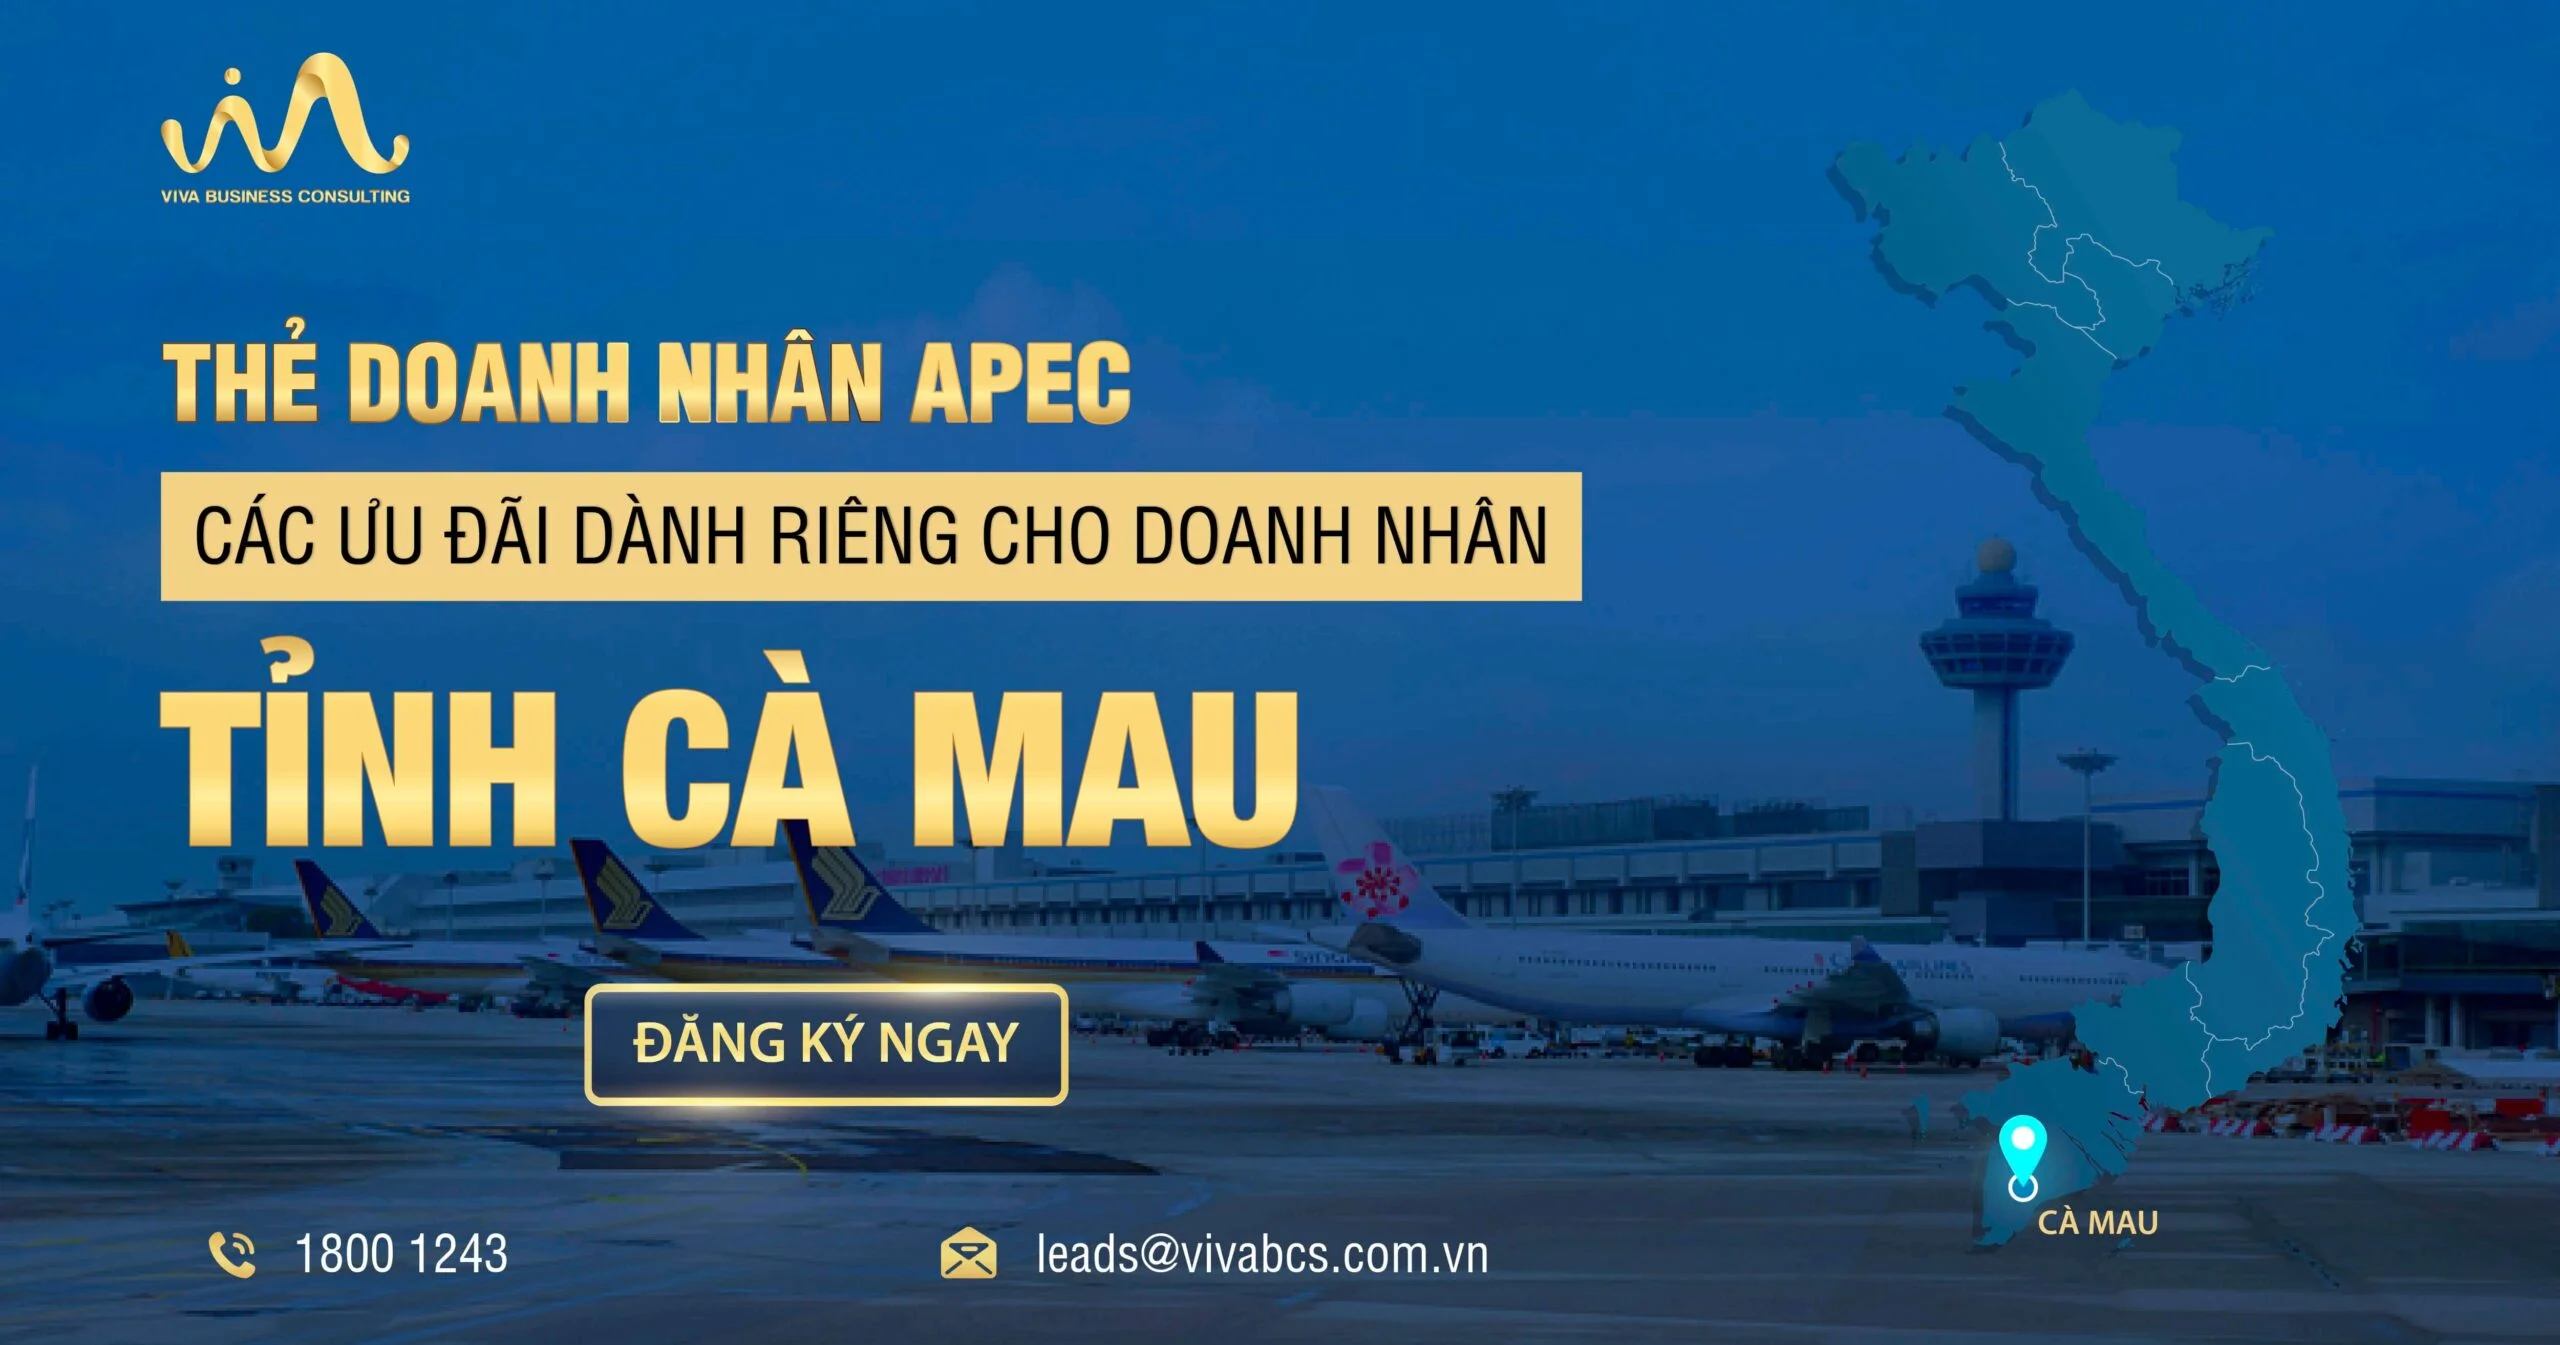 Chương trình thẻ APEC dành riêng cho doanh nhân Cà Mau